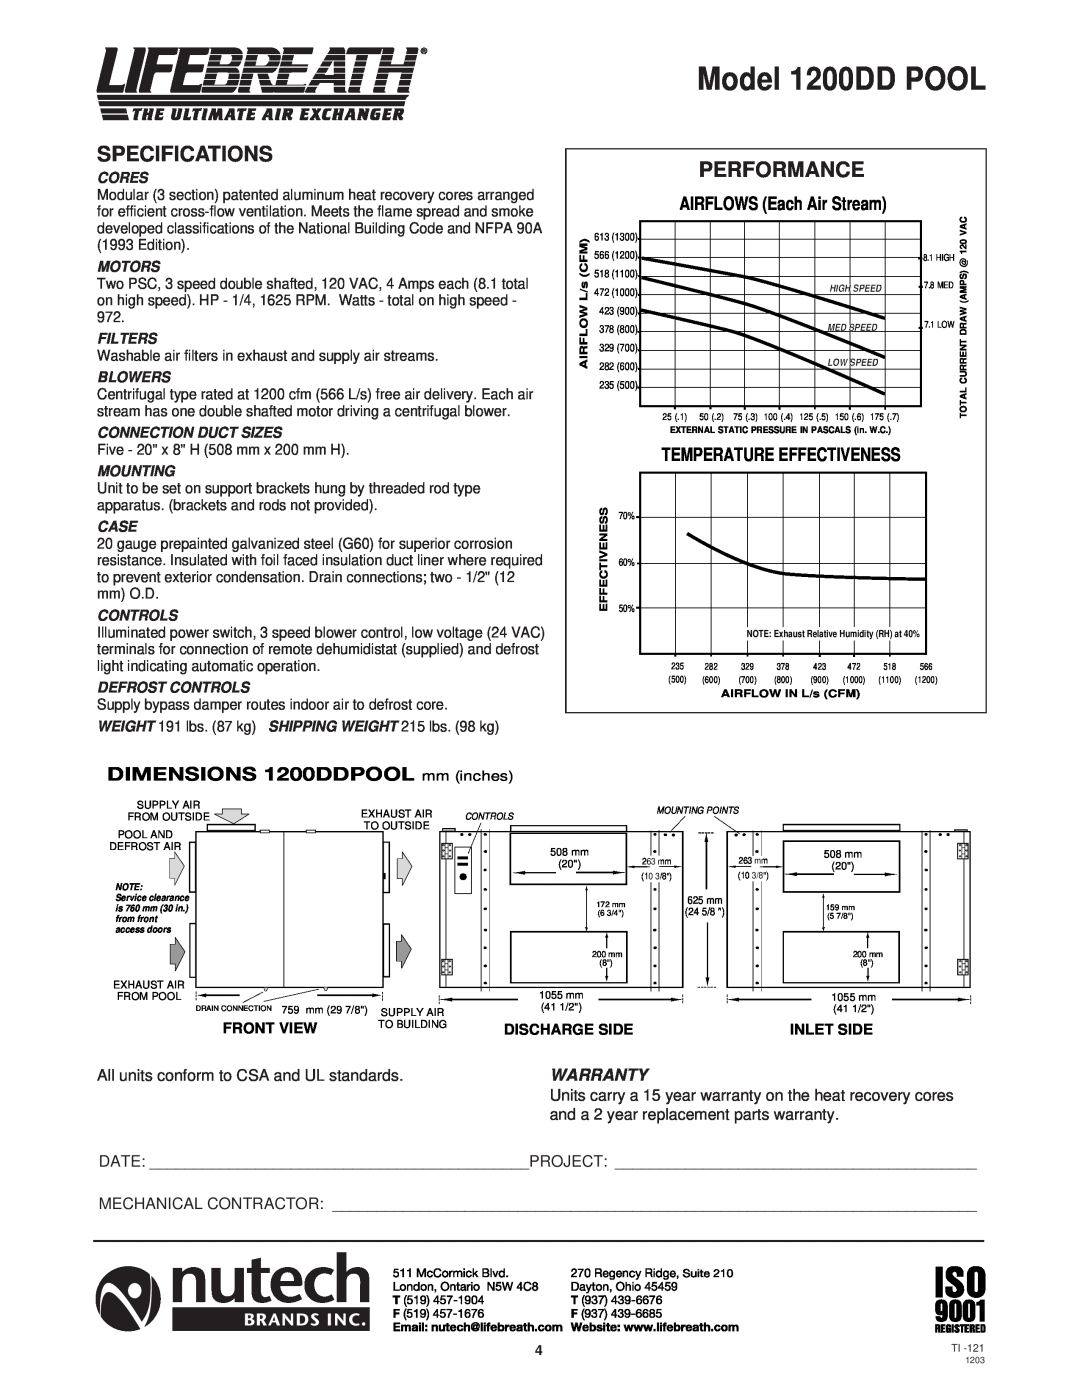 Lifebreath 1000RHCAC, 700DDPOOL Model 1200DD POOL, Specifications, Performance, DIMENSIONS 1200DDPOOL mm inches, Warranty 